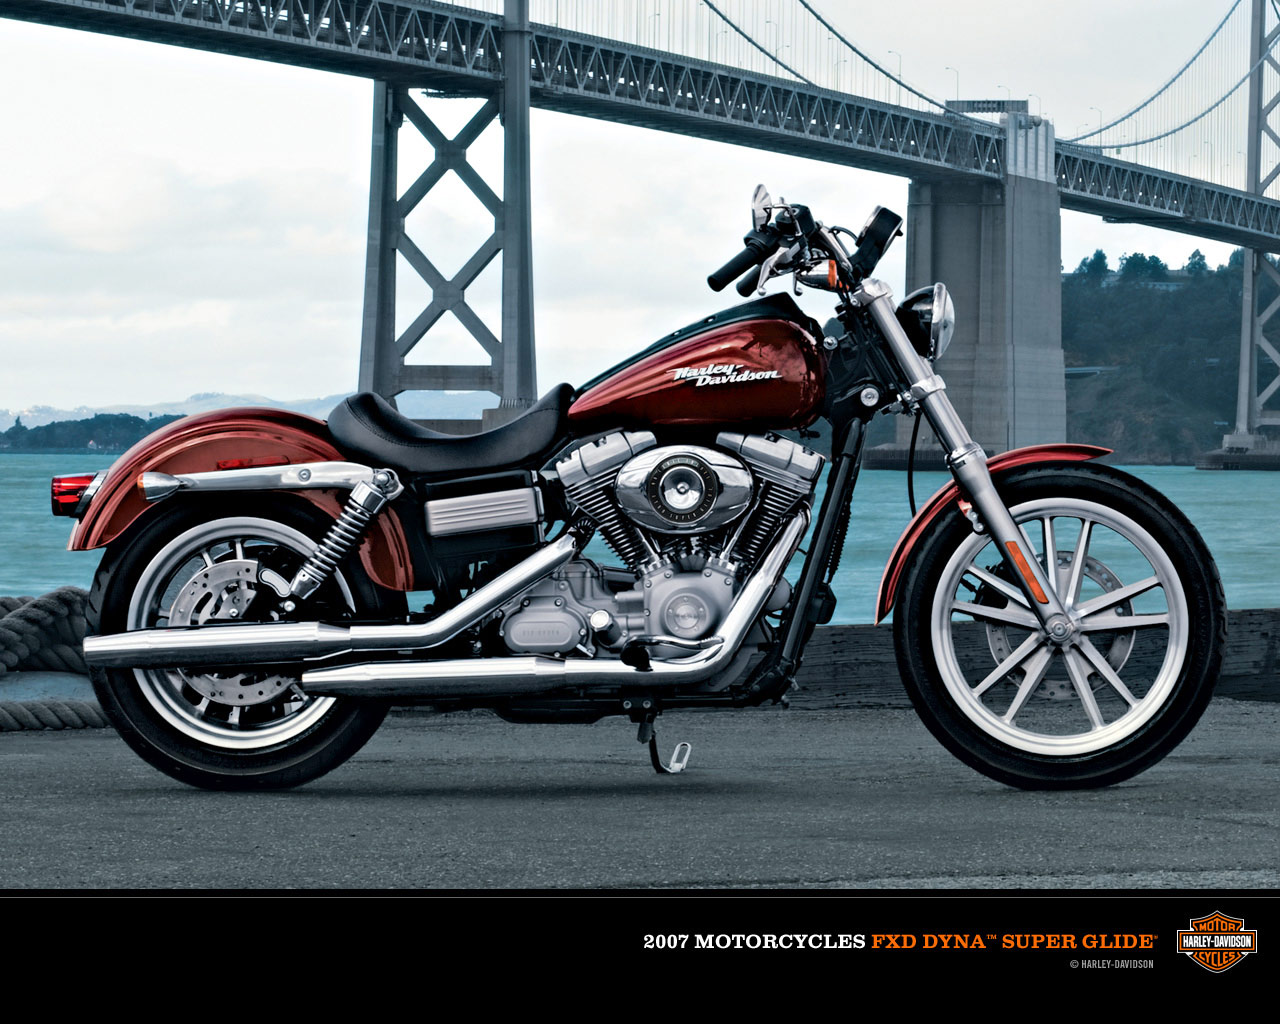 Gambar Gambar Motor Harley Davidson Gambar Unik Keren Dan Lucu